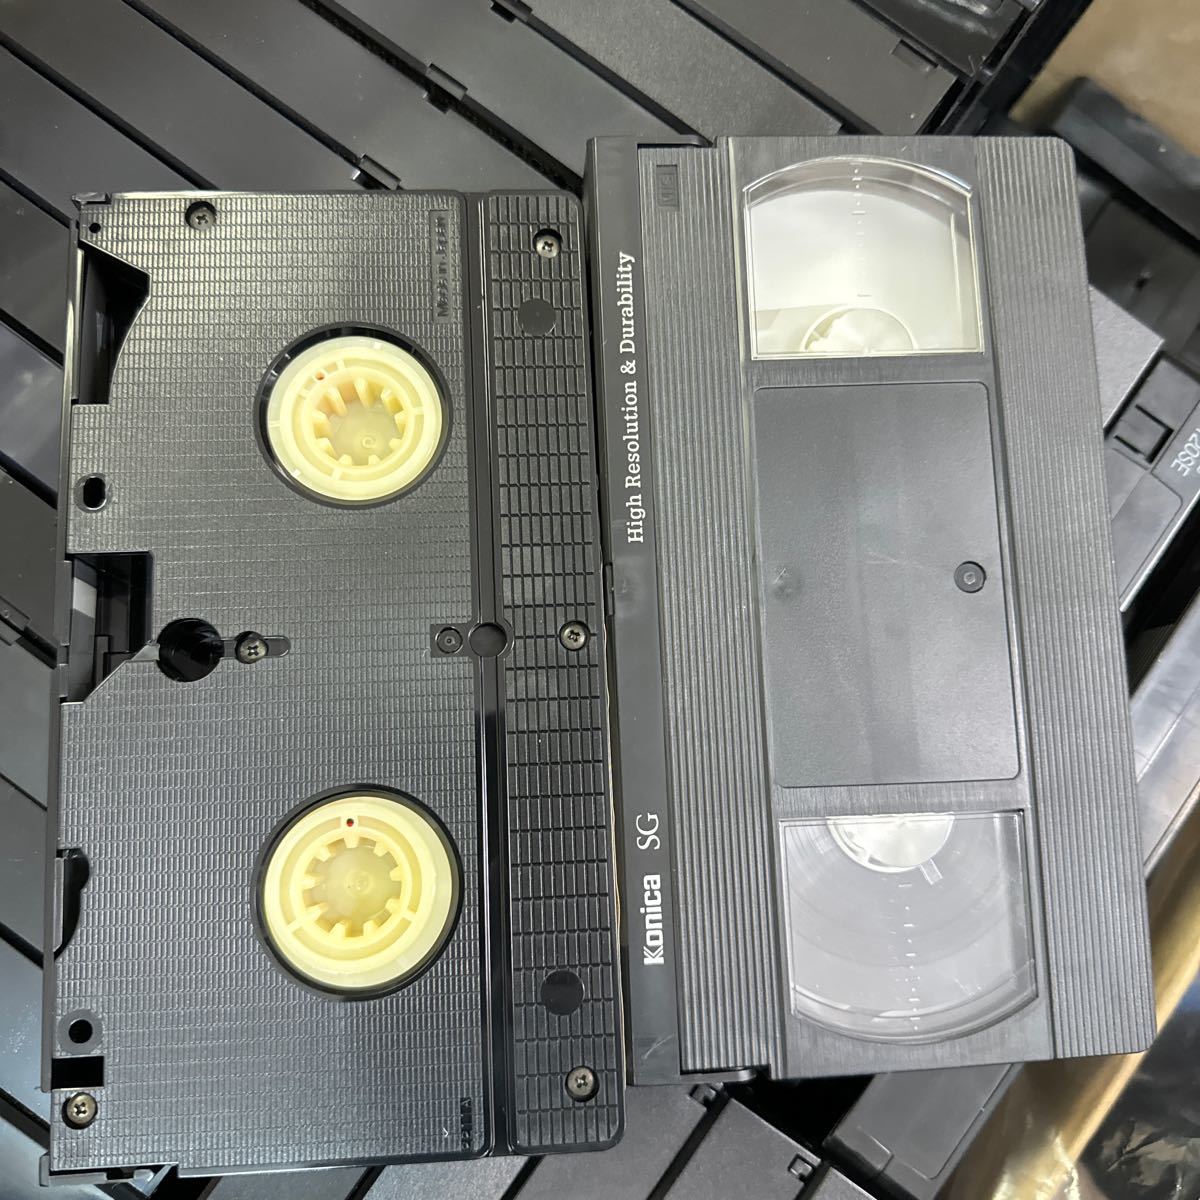 ◆⑬使用済み VHS ビデオテープ 大量まとめ売り 約100本以上 中古 録画済み ケースなし 本体のみ ダビング 上書き 再生未確認 145-21の画像4